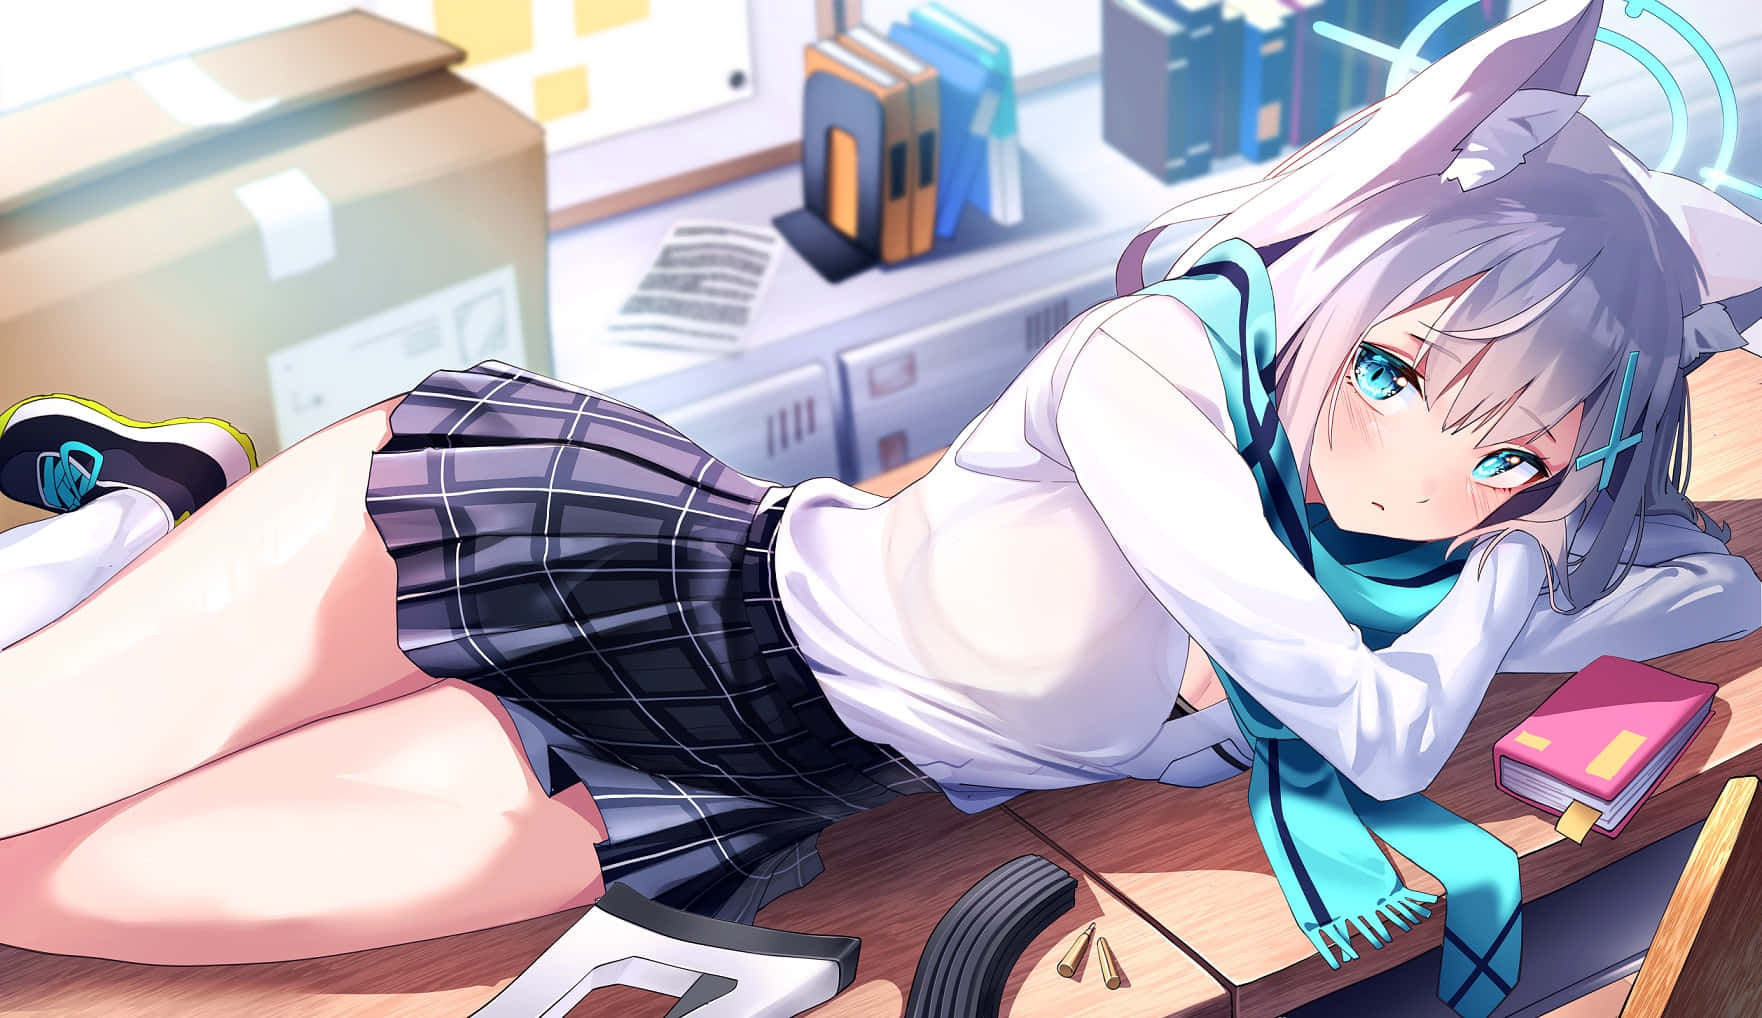 Anime Fox Girl Restingat Desk Wallpaper